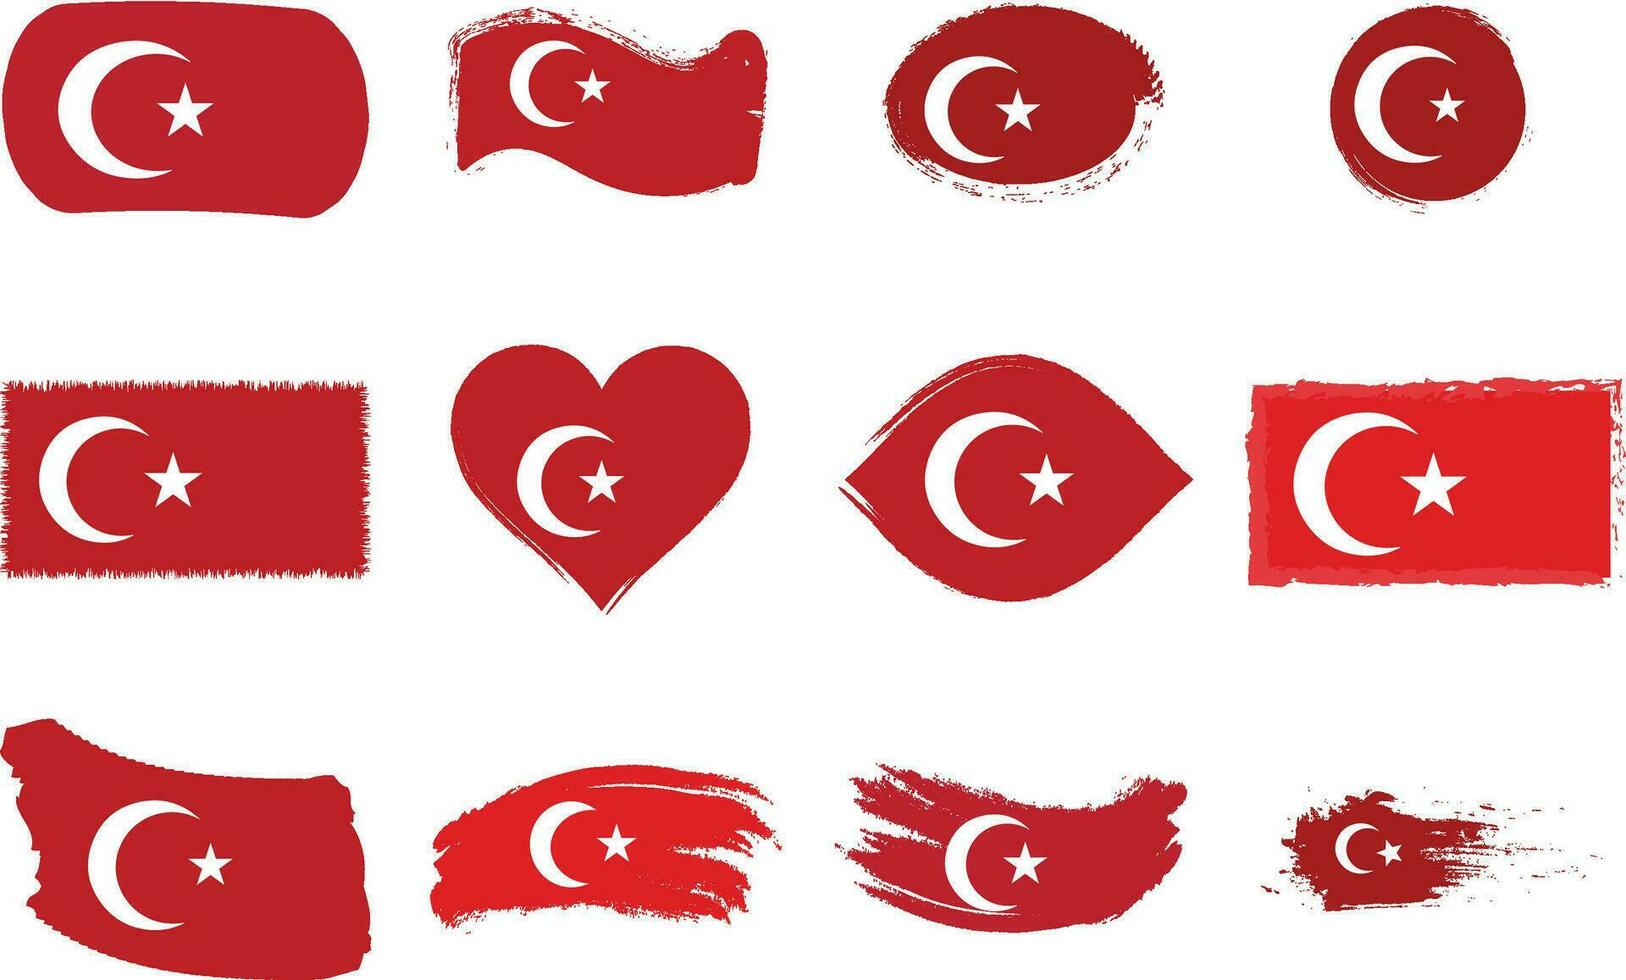 tacchino bandiere di vario forme e geografico carta geografica impostare. realistico Turco bandiere, lucido pulsanti nel patriottico colori, altamente dettagliato carta geografica e globo con identificazione perno vettore illustrazione